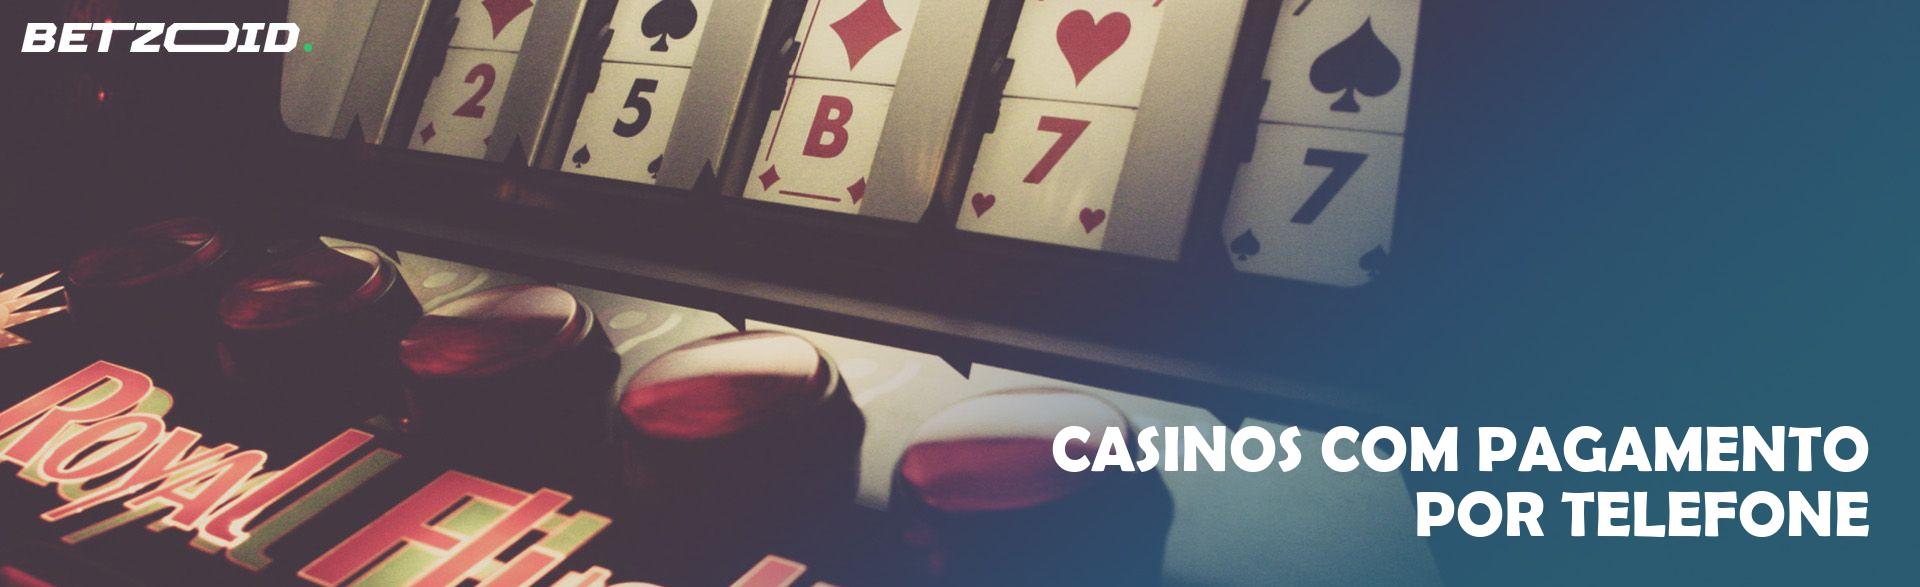 Casinos com Pagamento por Telefone.